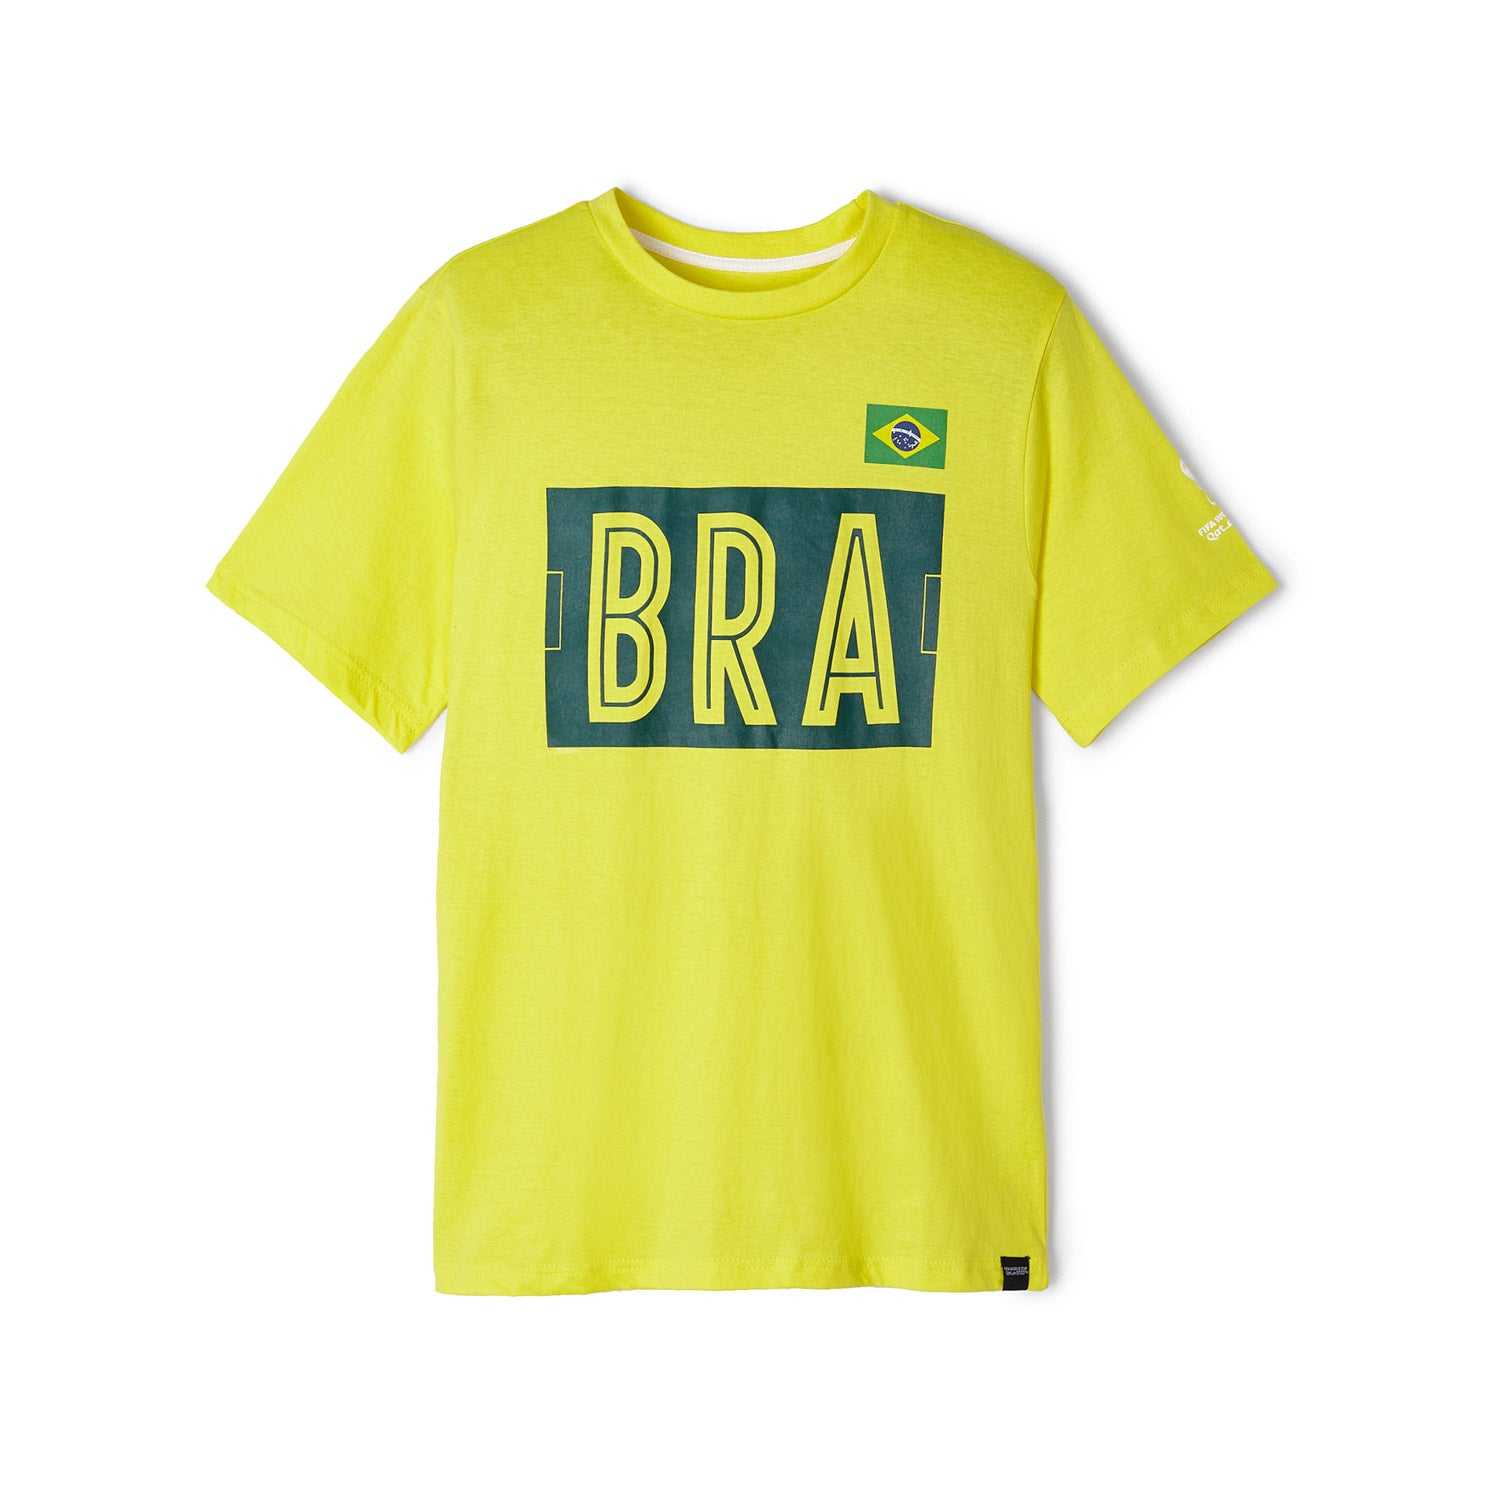 2022 World Cup Brazil Yellow T-Shirt - Mens